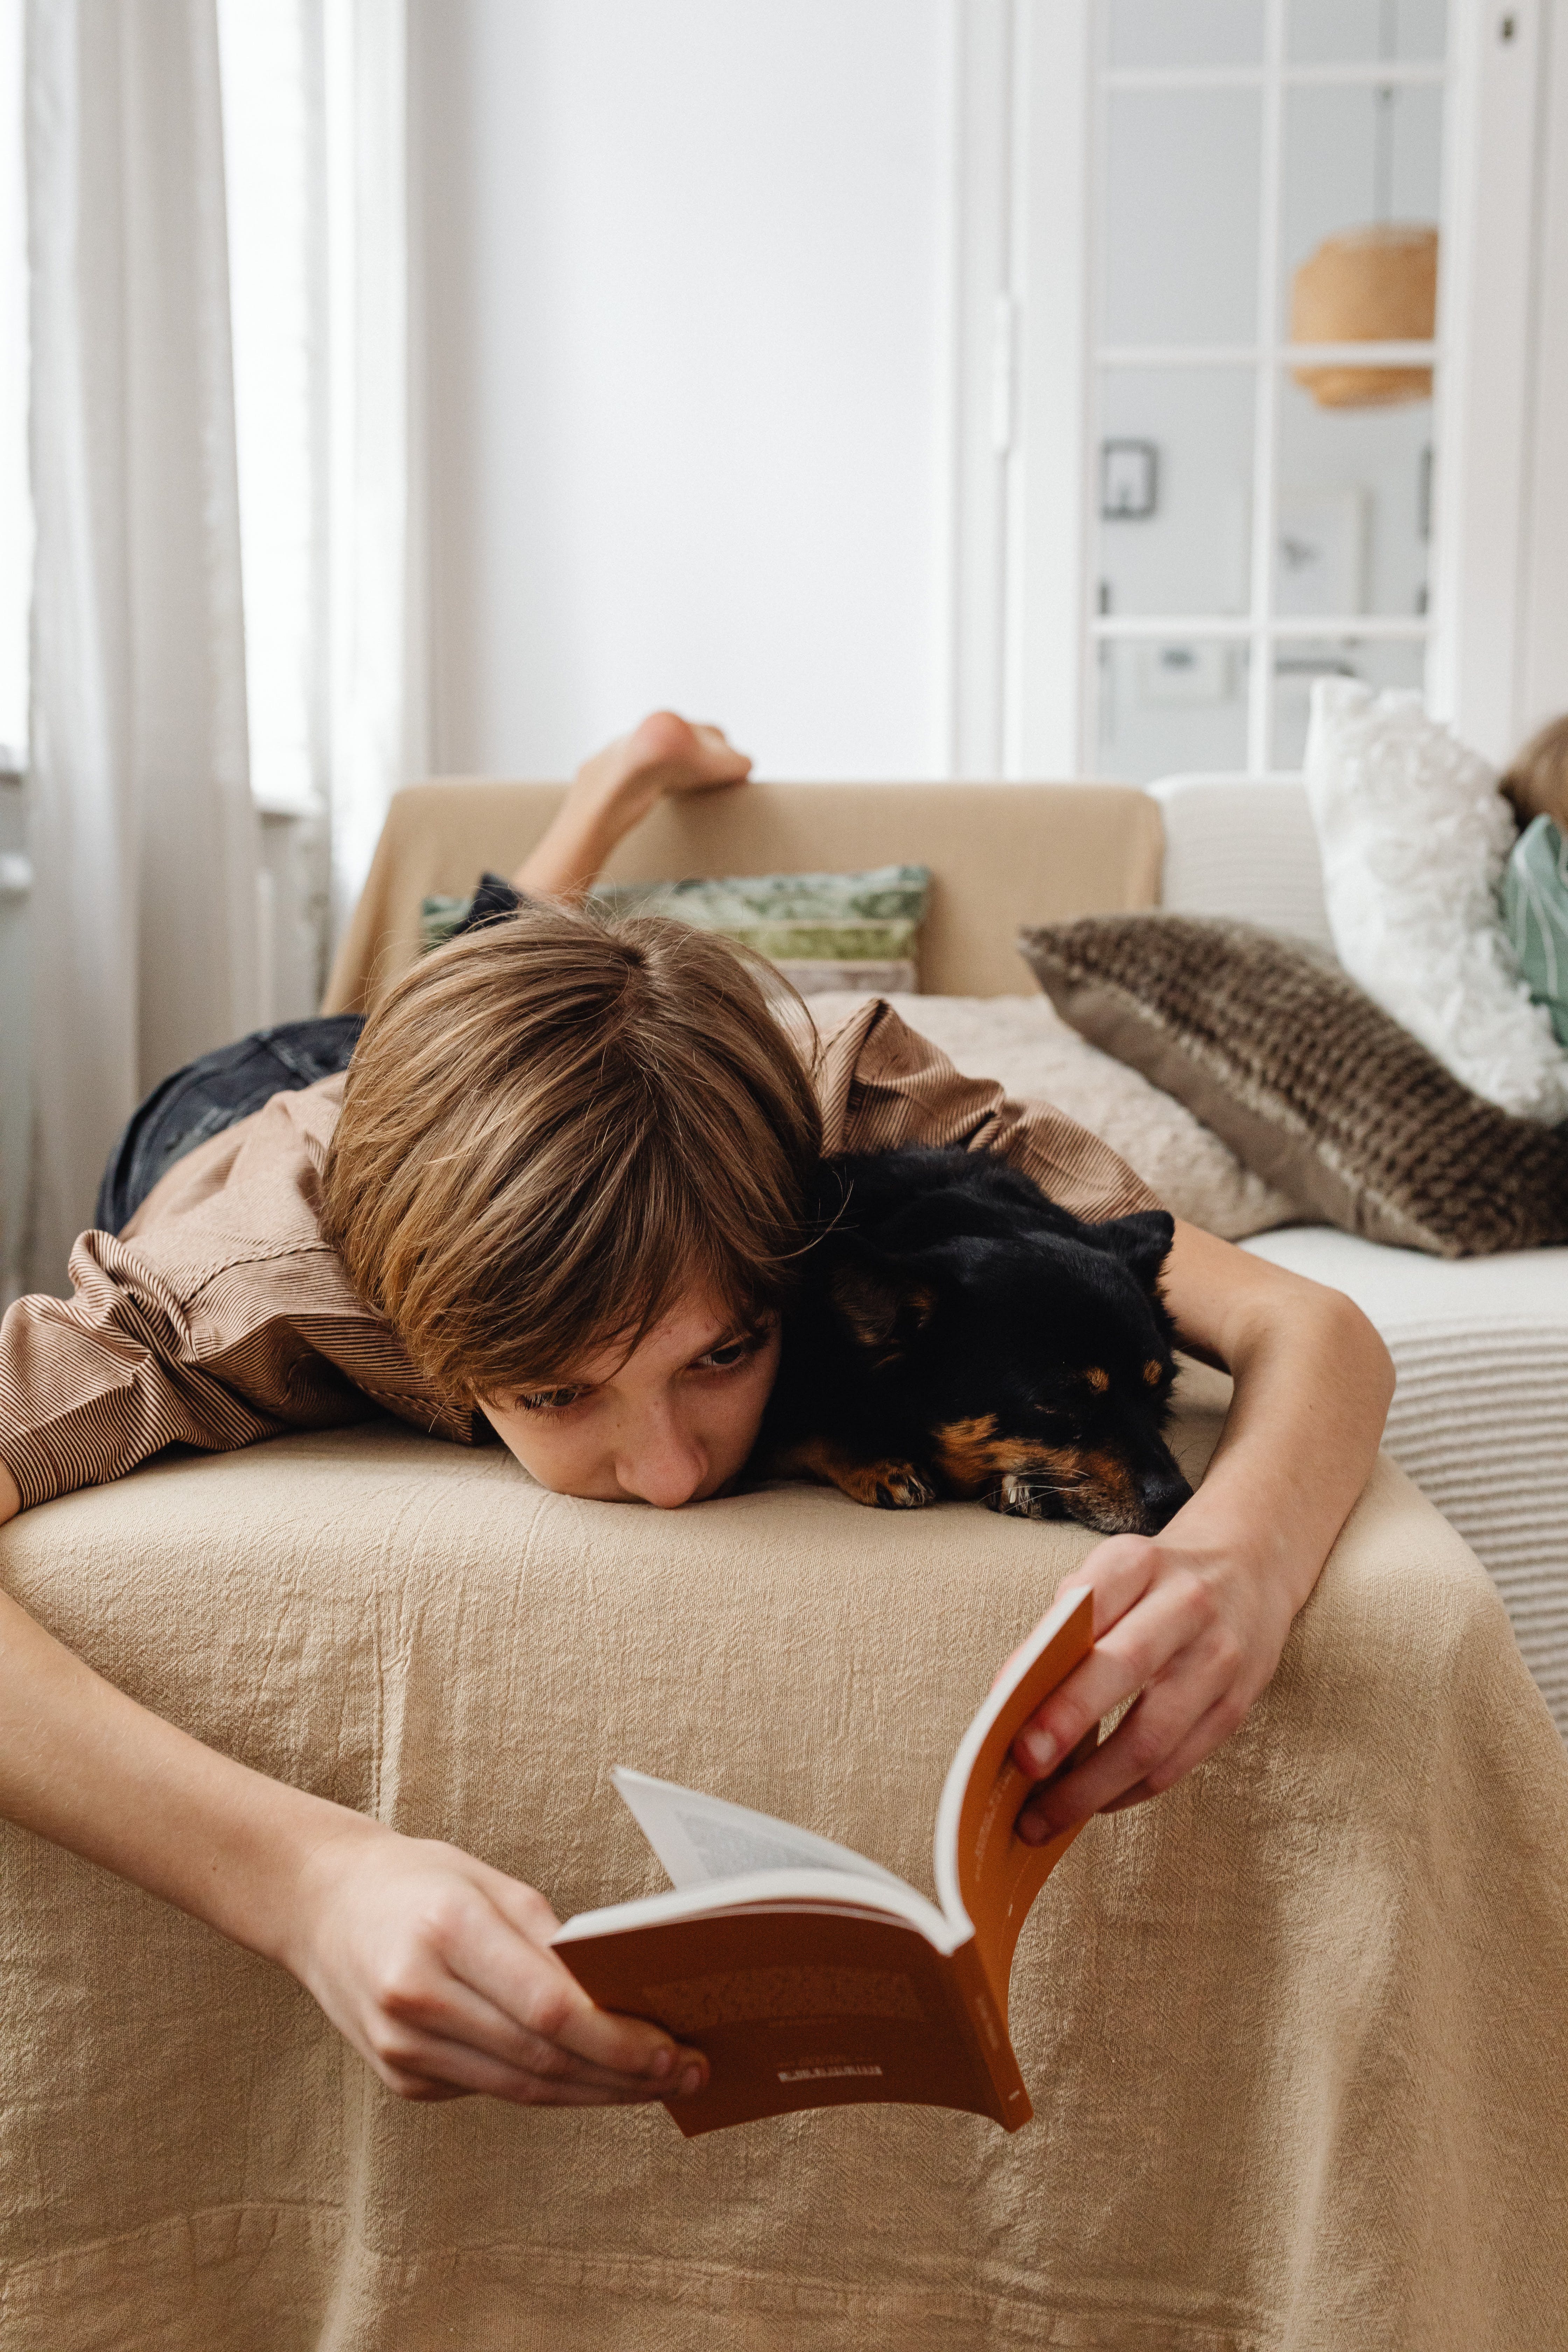 Un petit garçon qui lit un livre avec son chien en étant allongé sur son lit | Source : Pexels